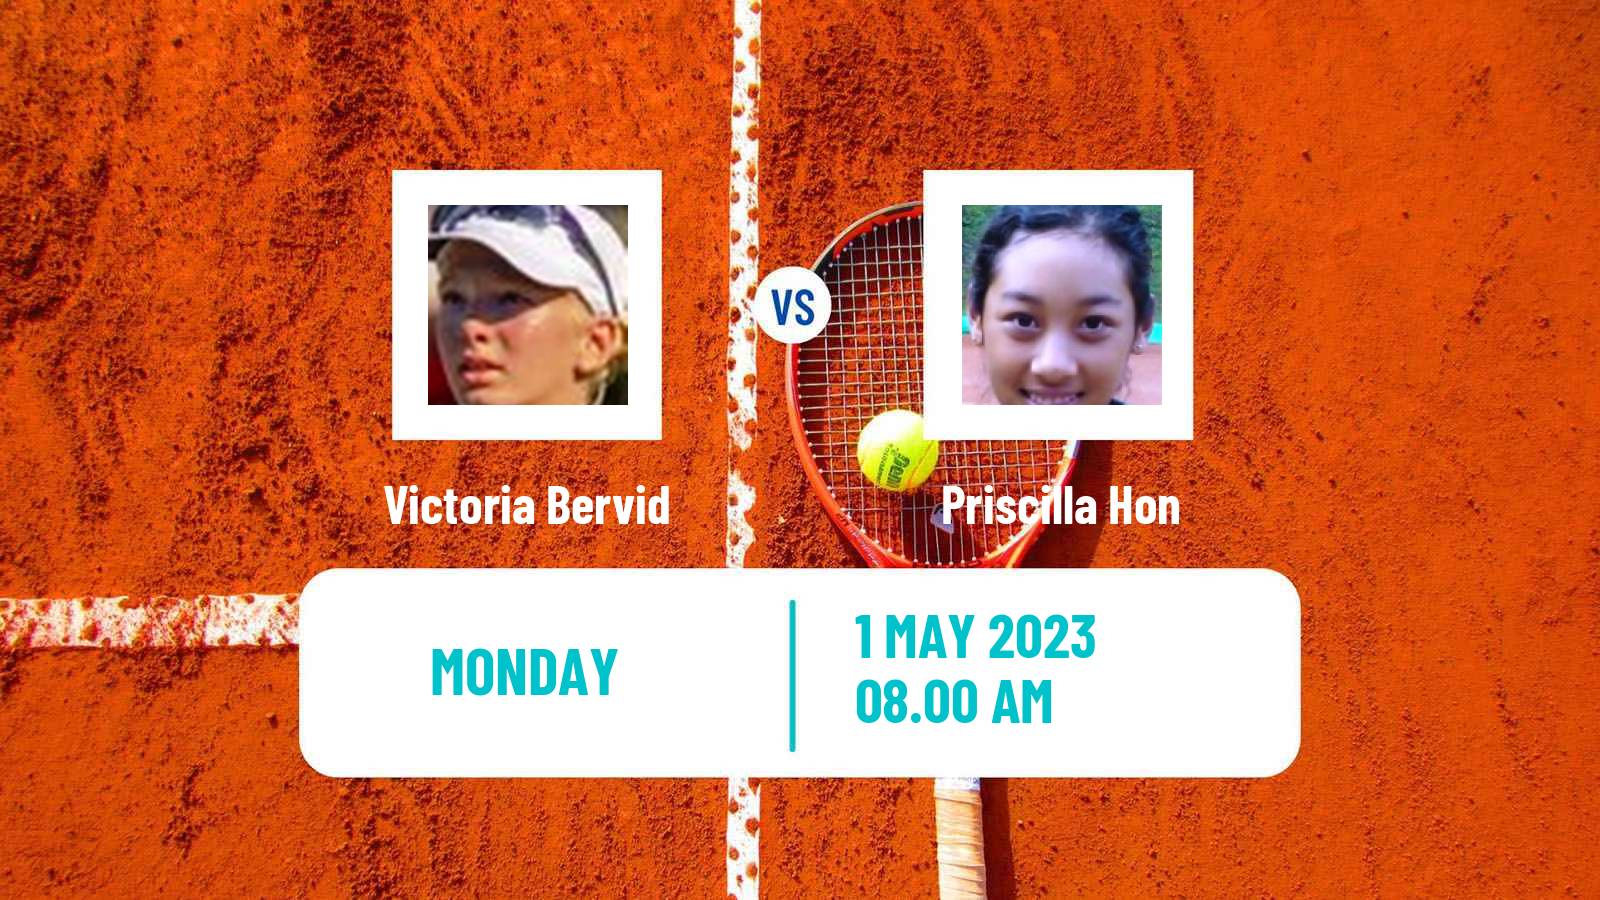 Tennis ITF Tournaments Victoria Bervid - Priscilla Hon